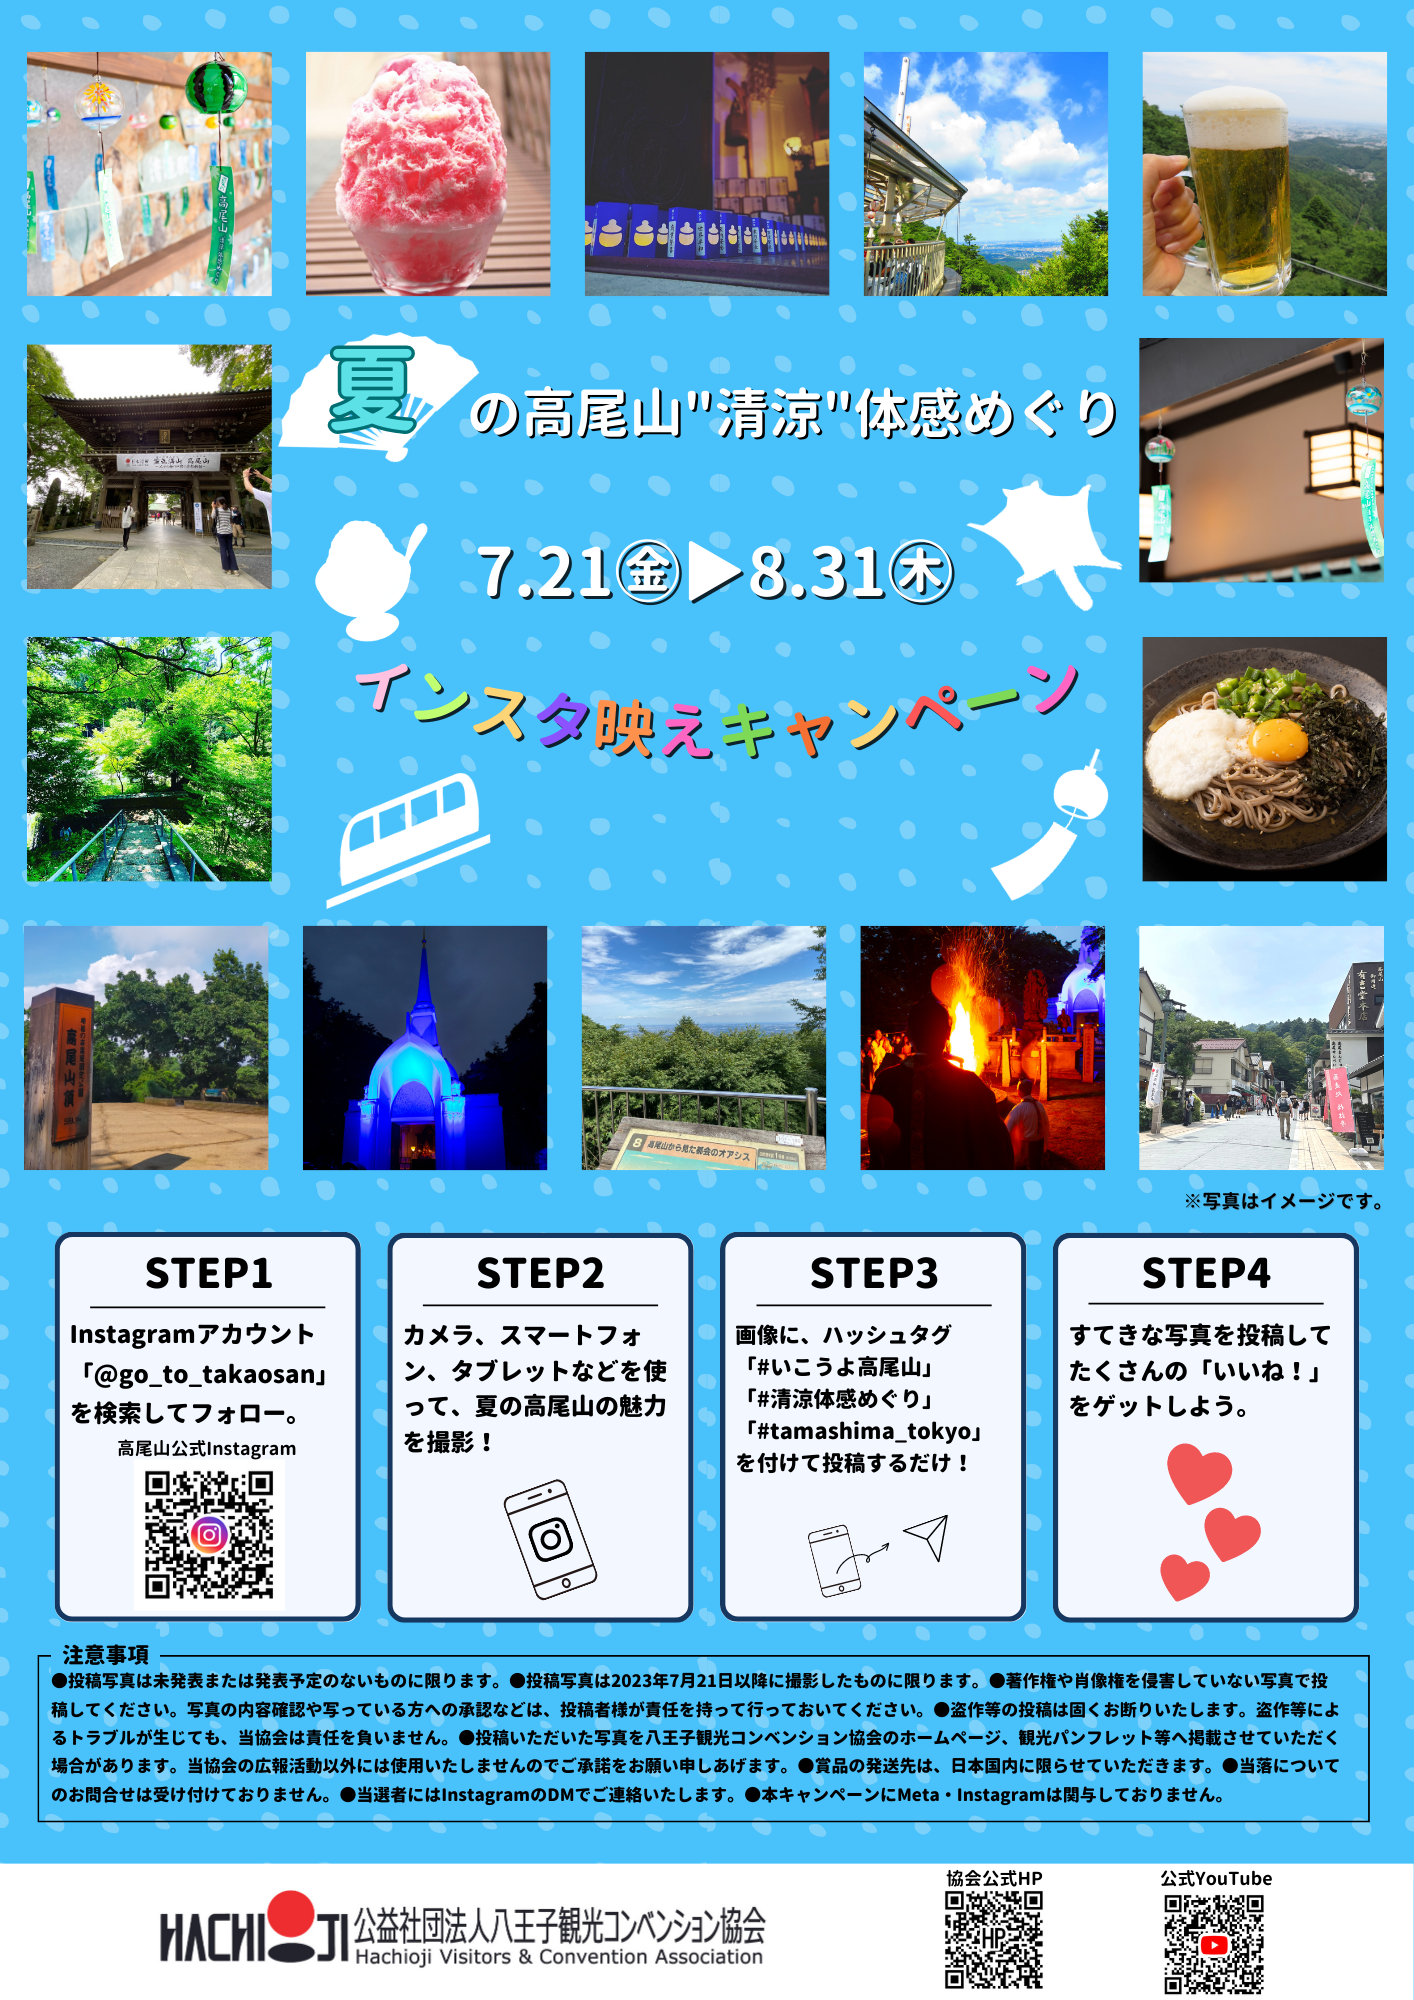 夏の高尾山「インスタ映え」キャンペーン